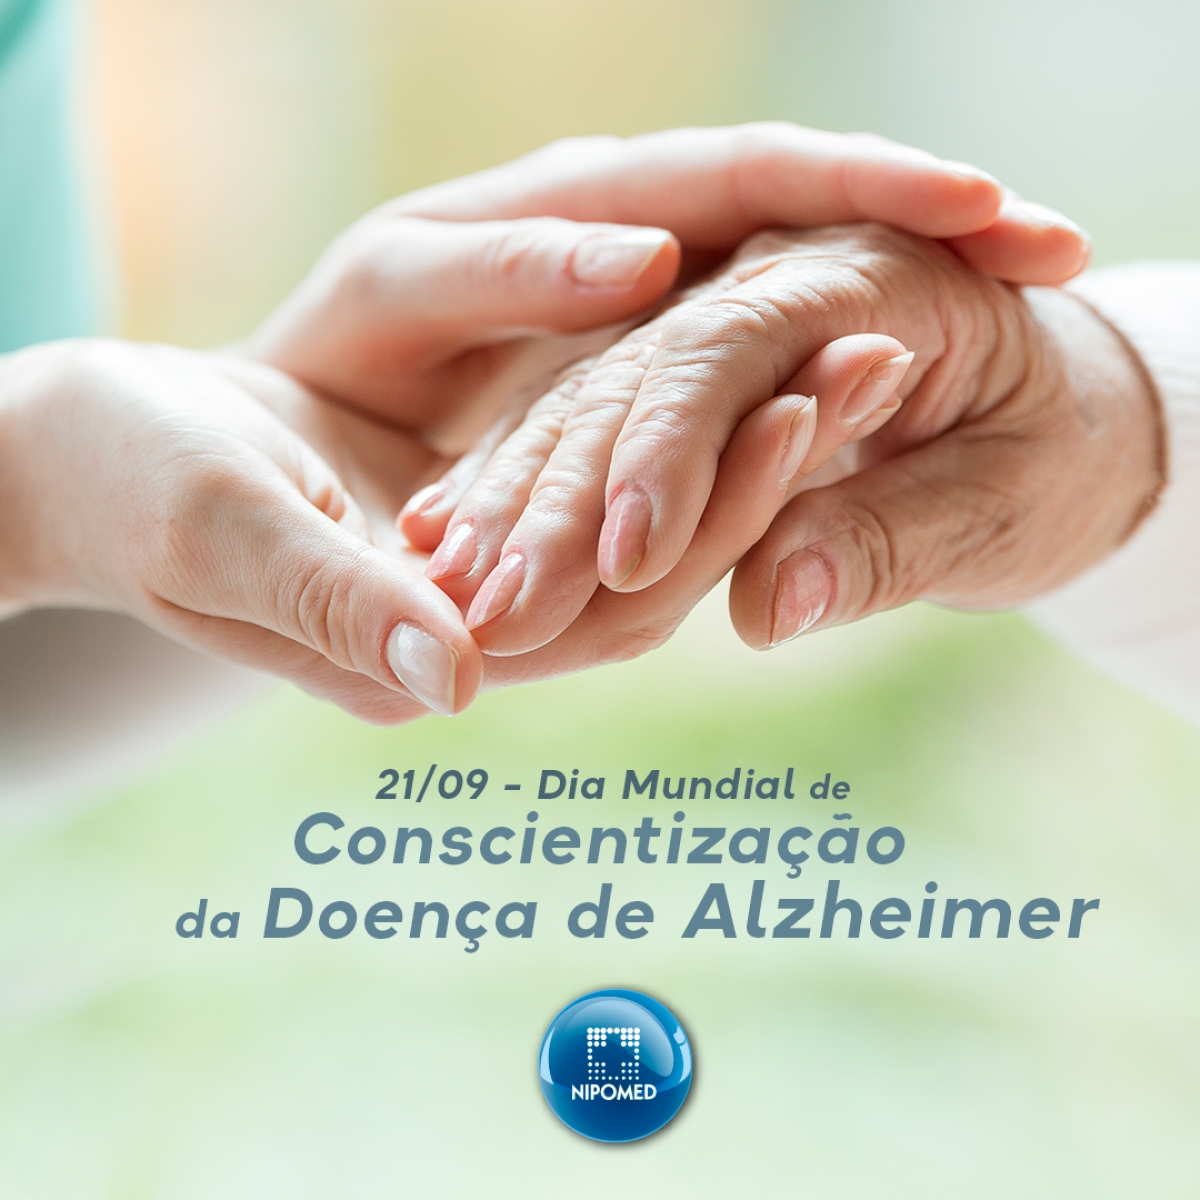 Dia Mundial de Conscientização da Doença de Alzheimer